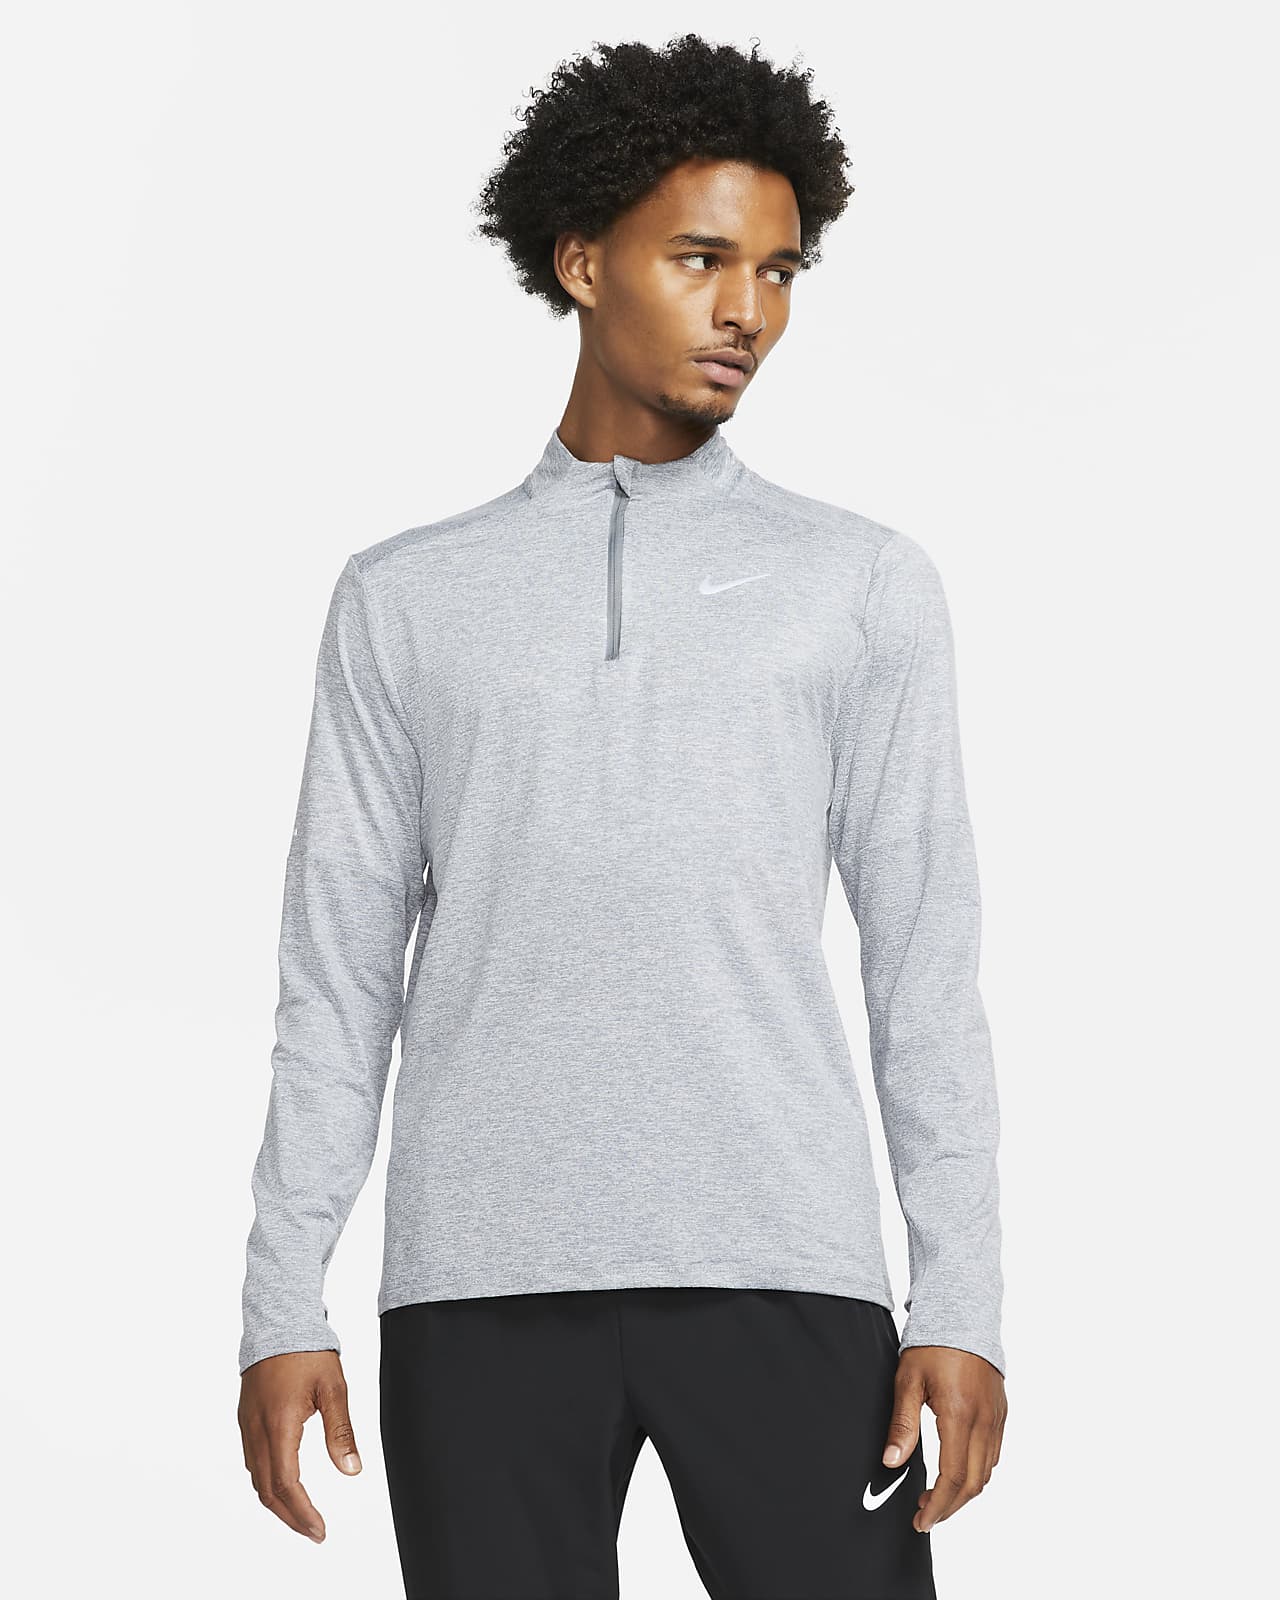 Ανδρική μπλούζα Dri-FIT για τρέξιμο με φερμουάρ στο μισό μήκος Nike